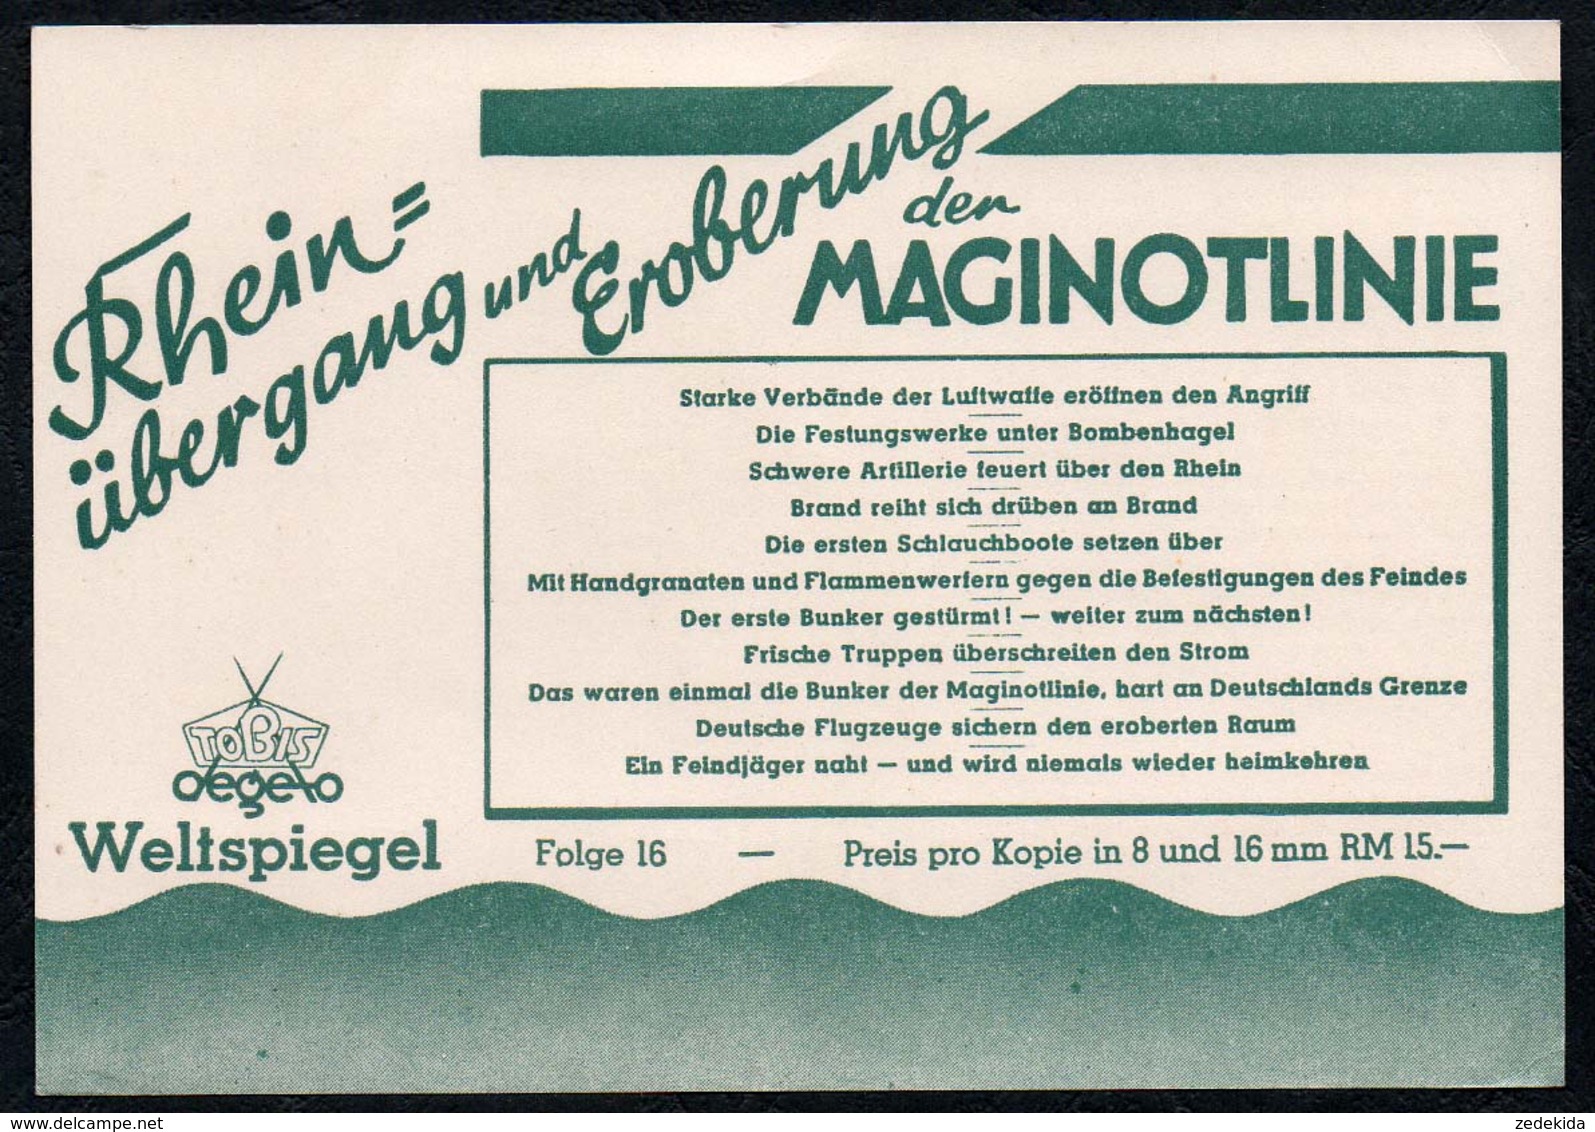 C0182 - Tobis Degeto Weltspiegel - Werbekarte Werbung - Maginotlinie - Schmalfilm - Werbepostkarten